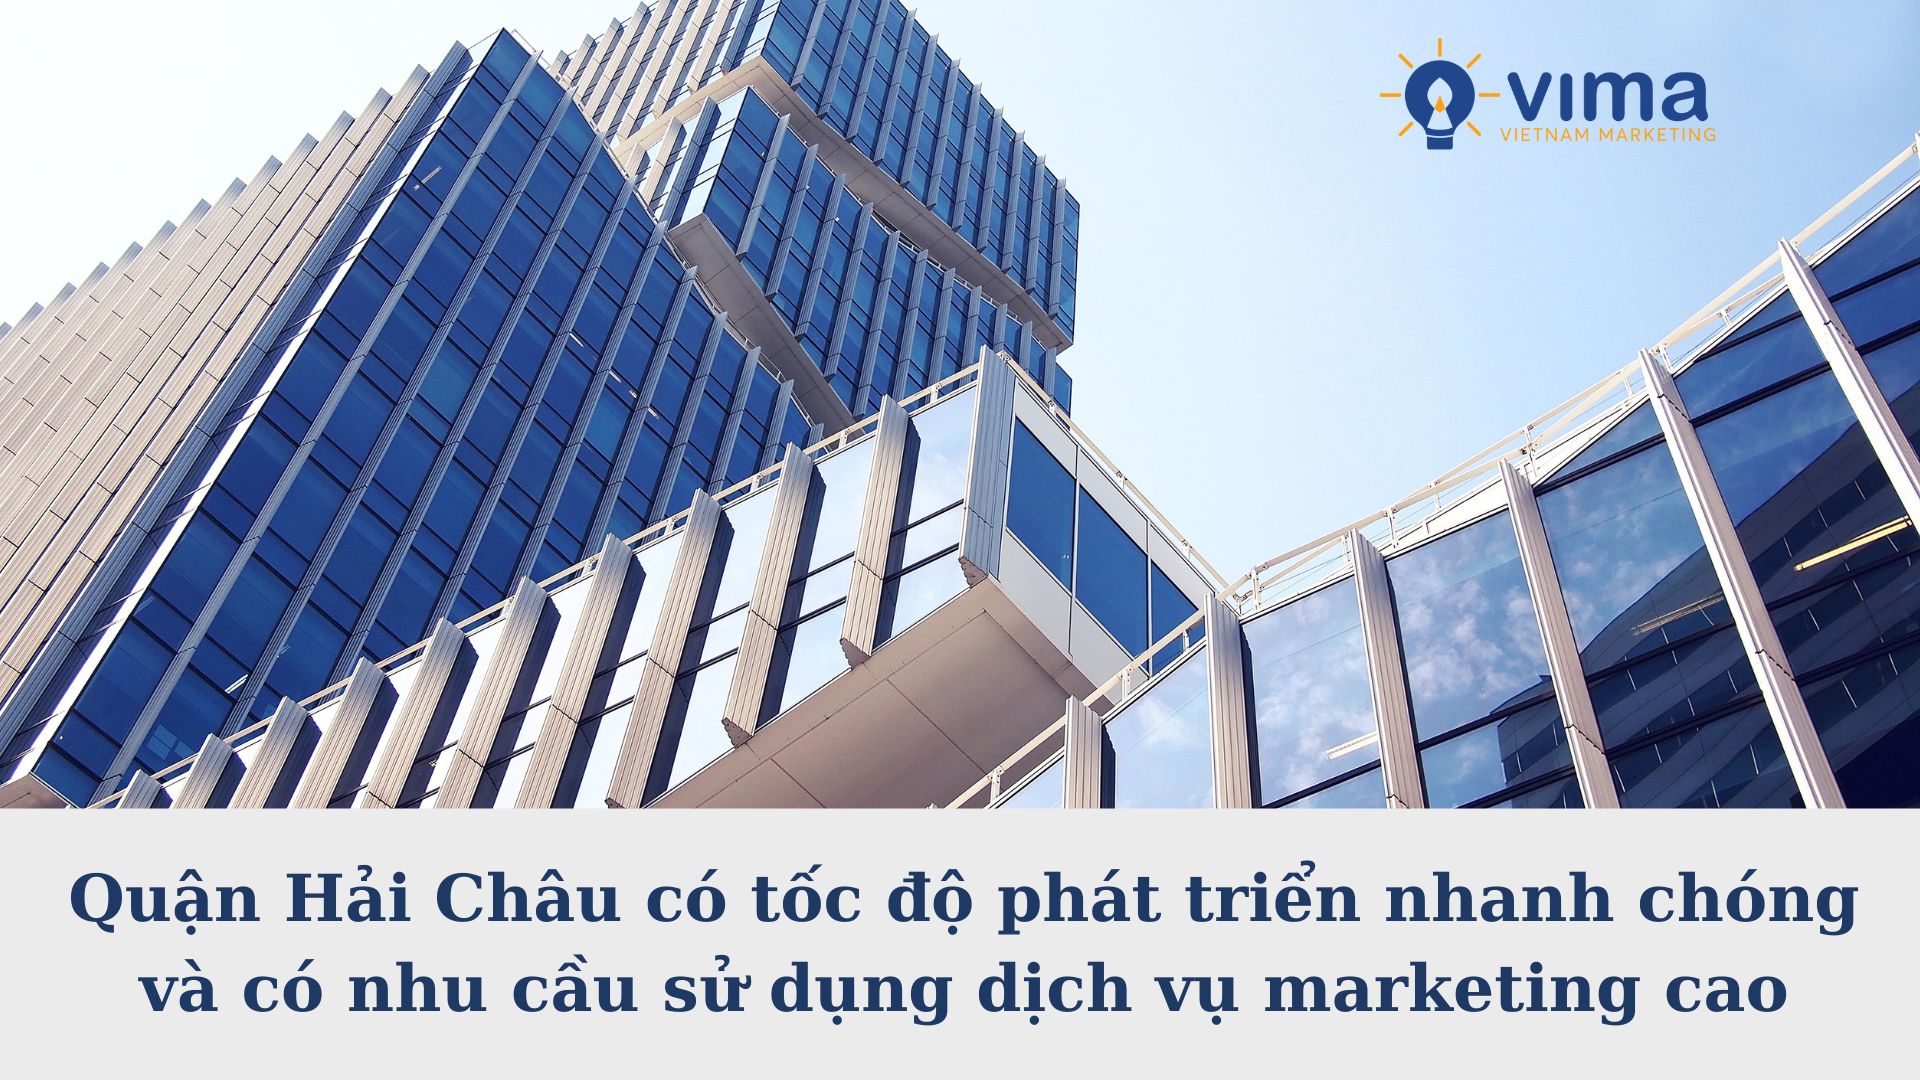 Nhu cầu sử dụng dịch vụ Marketing tổng thể tại quận Hải Châu cao 